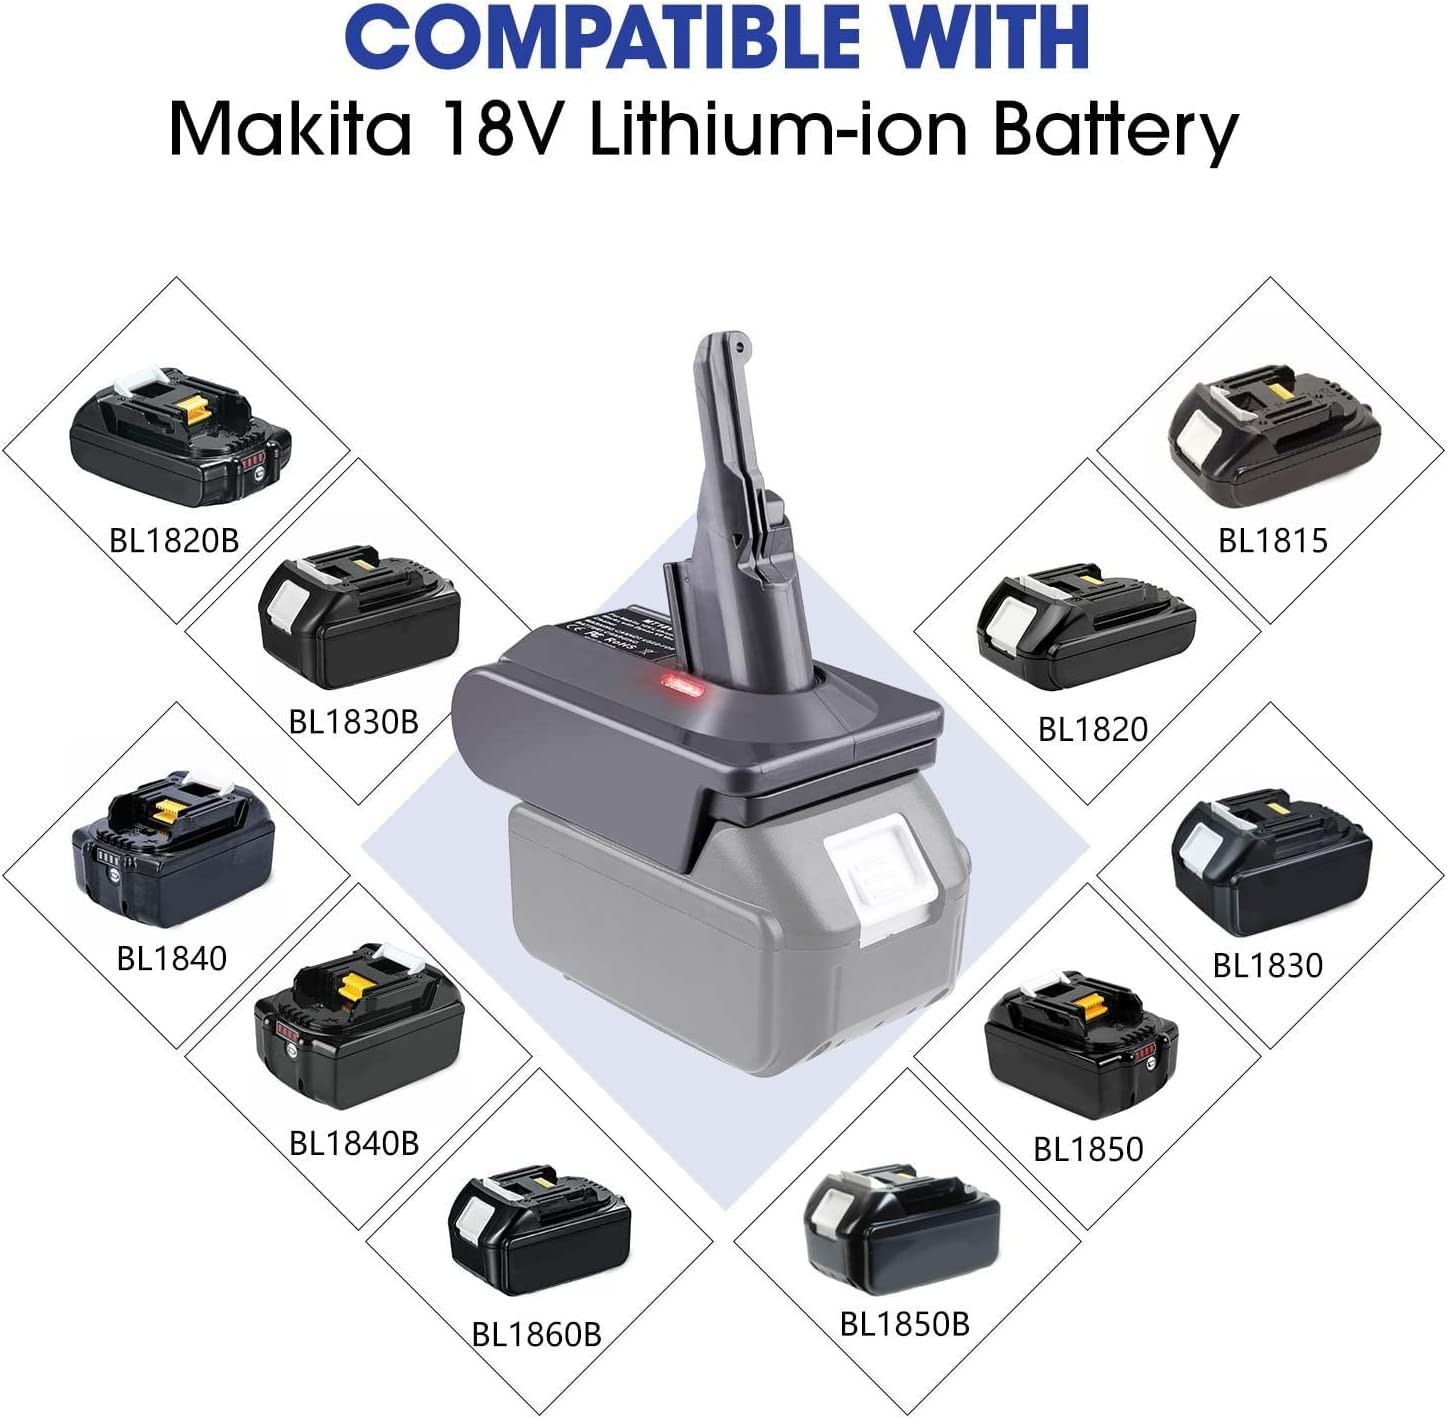 Dyson V7 batteriadapter för Makita 18V litiumbatteri